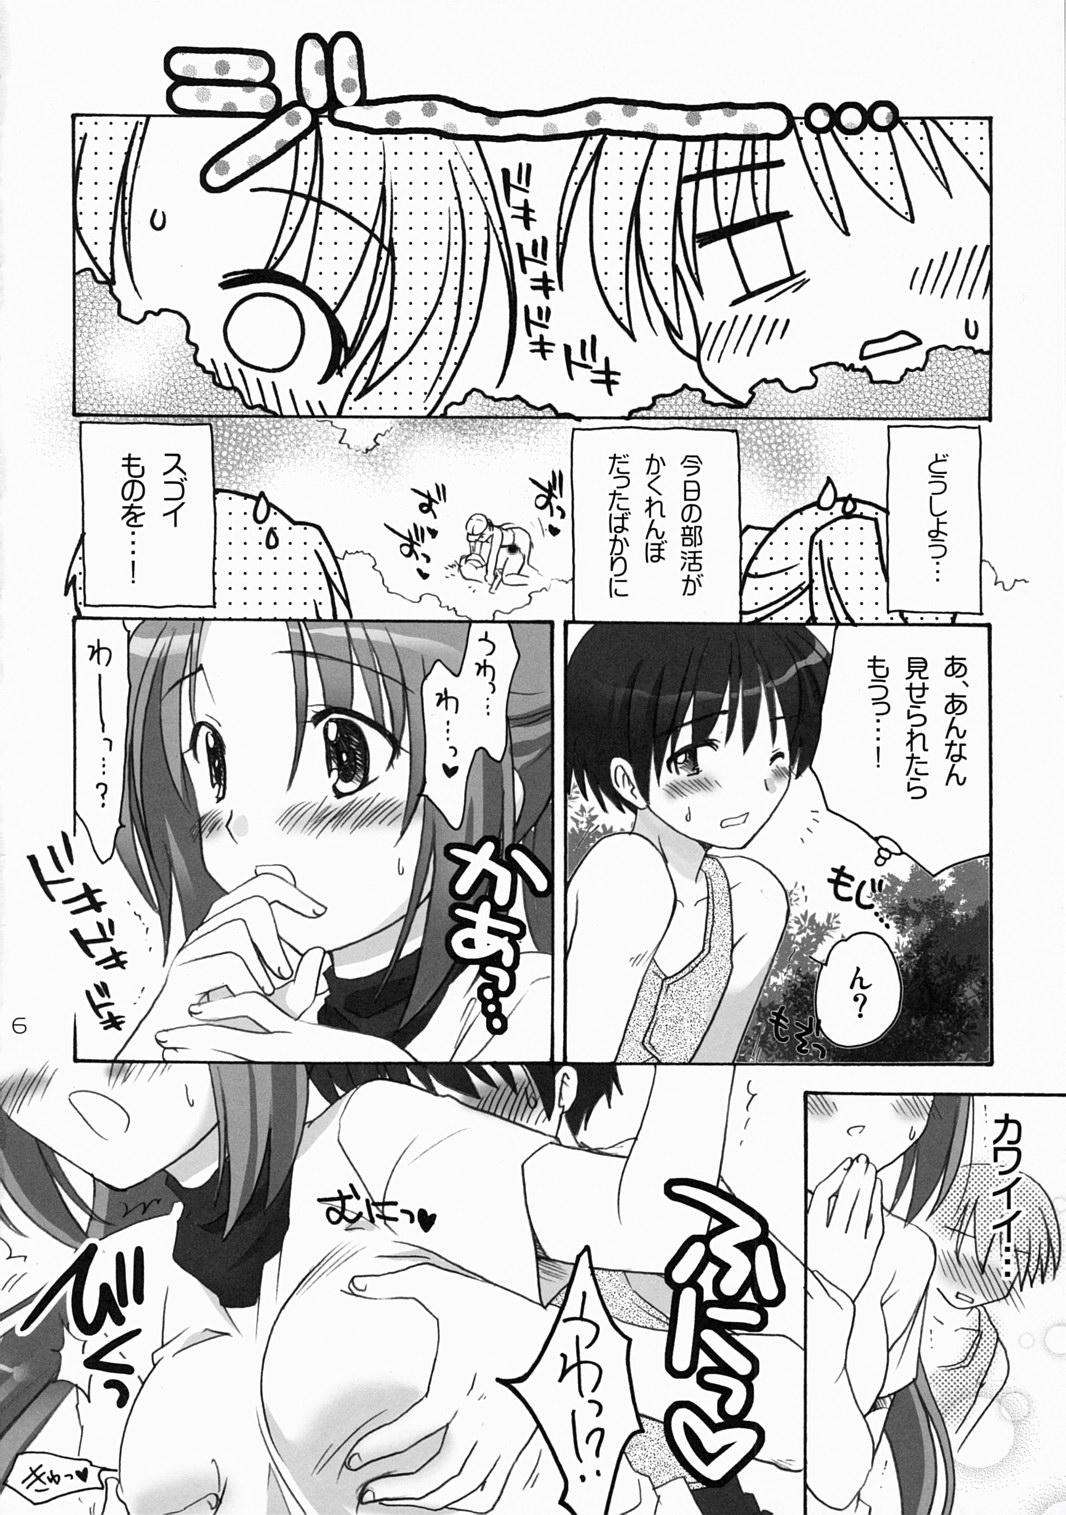 Boobs Higurashi Urabon 2 - Higurashi no naku koro ni Asia - Page 5